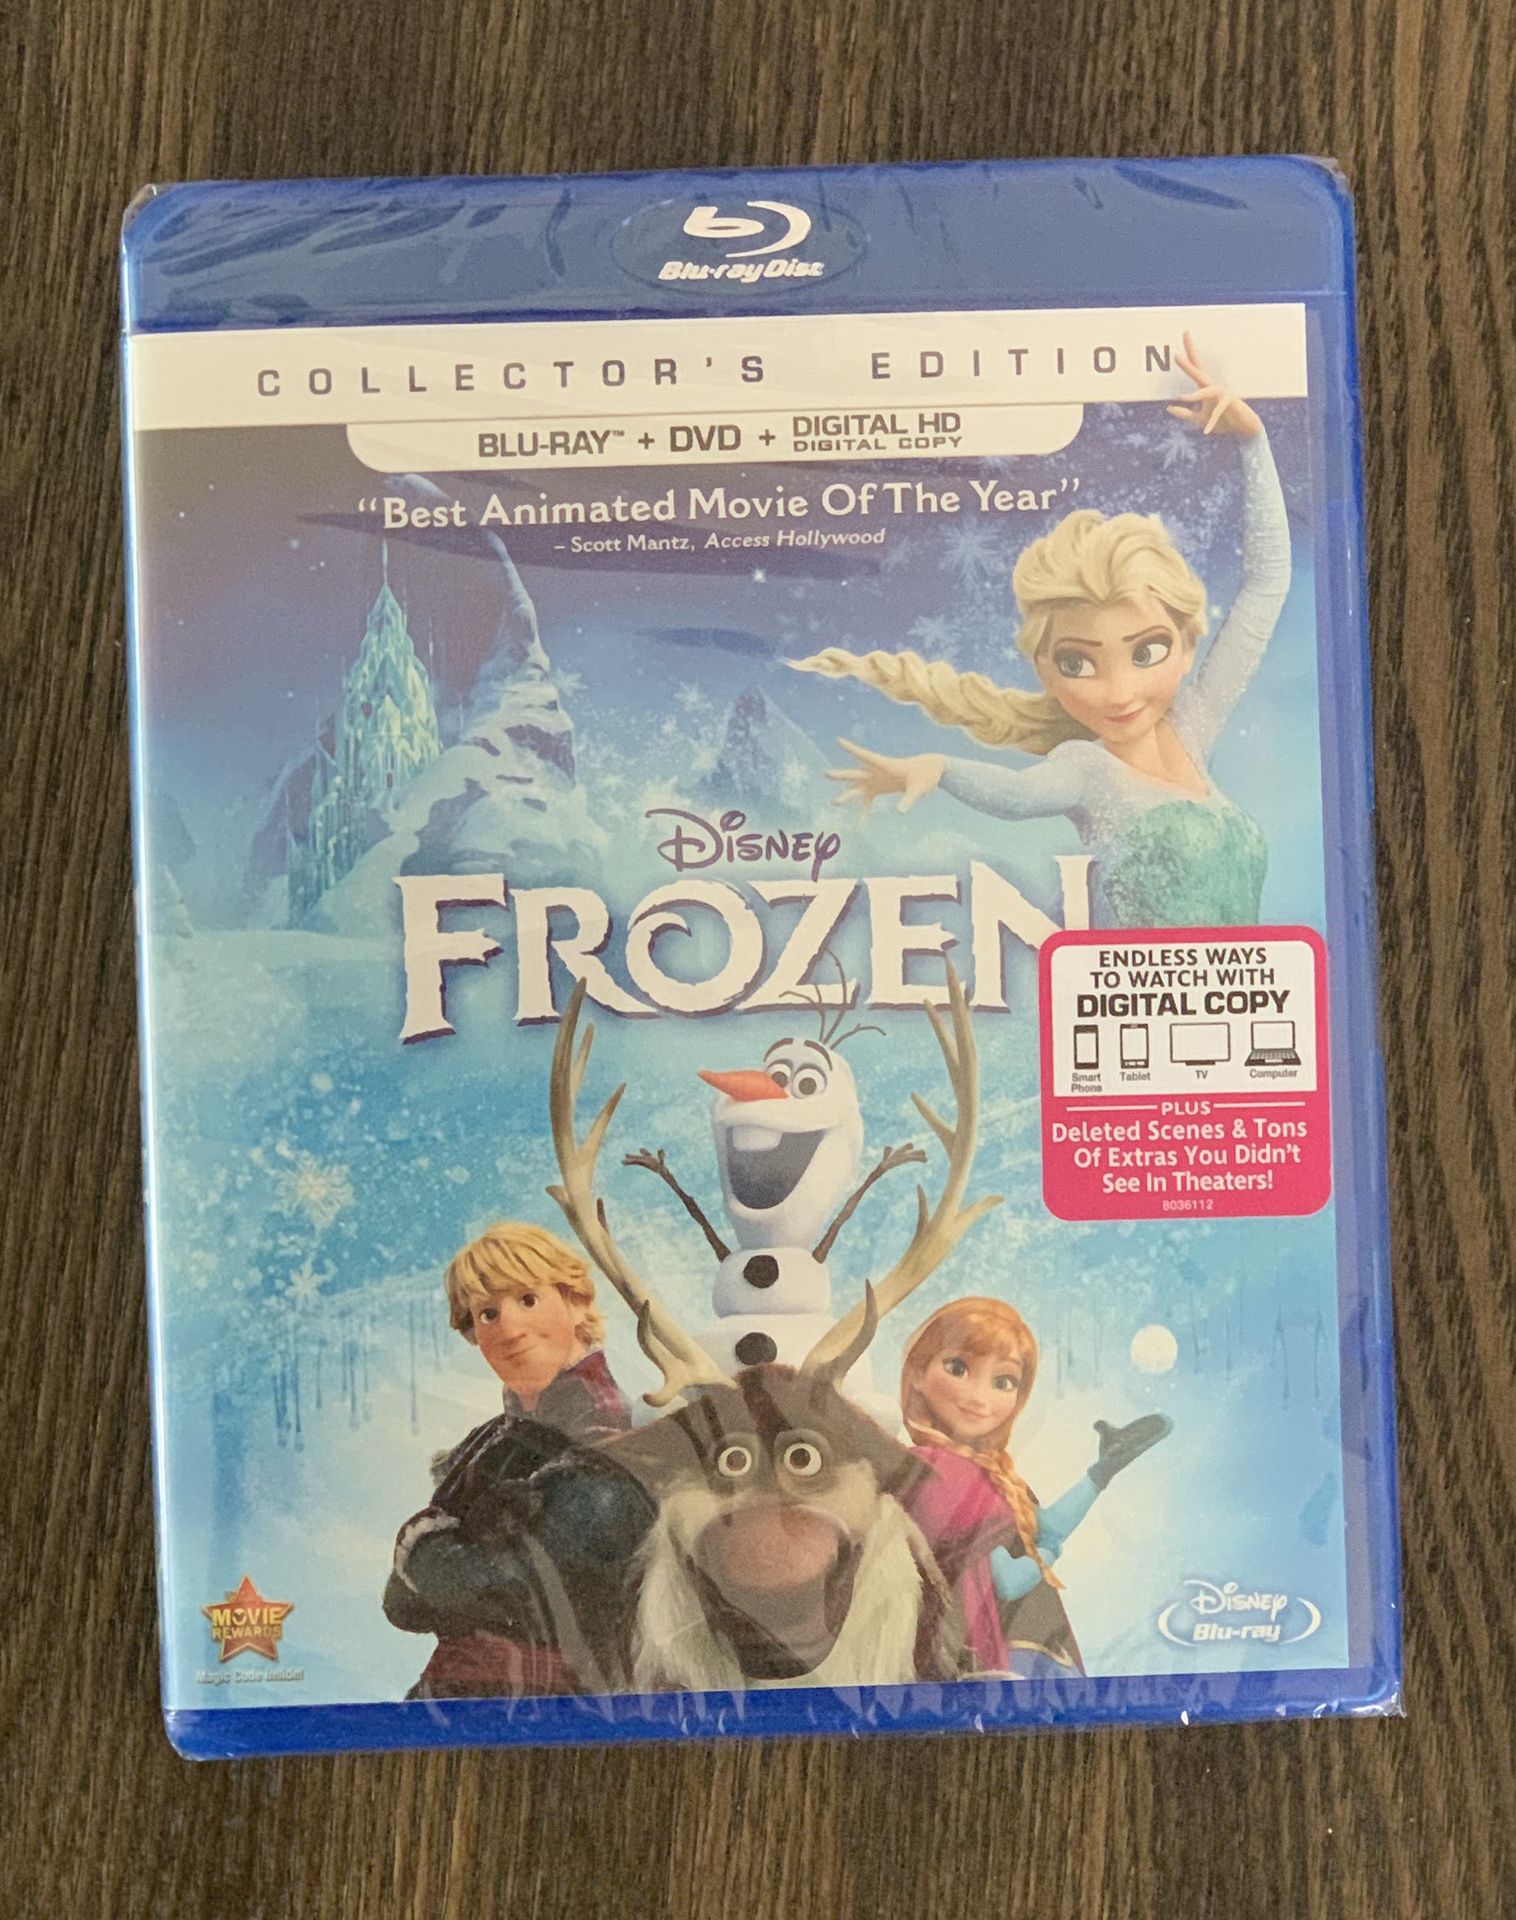 Frozen movie